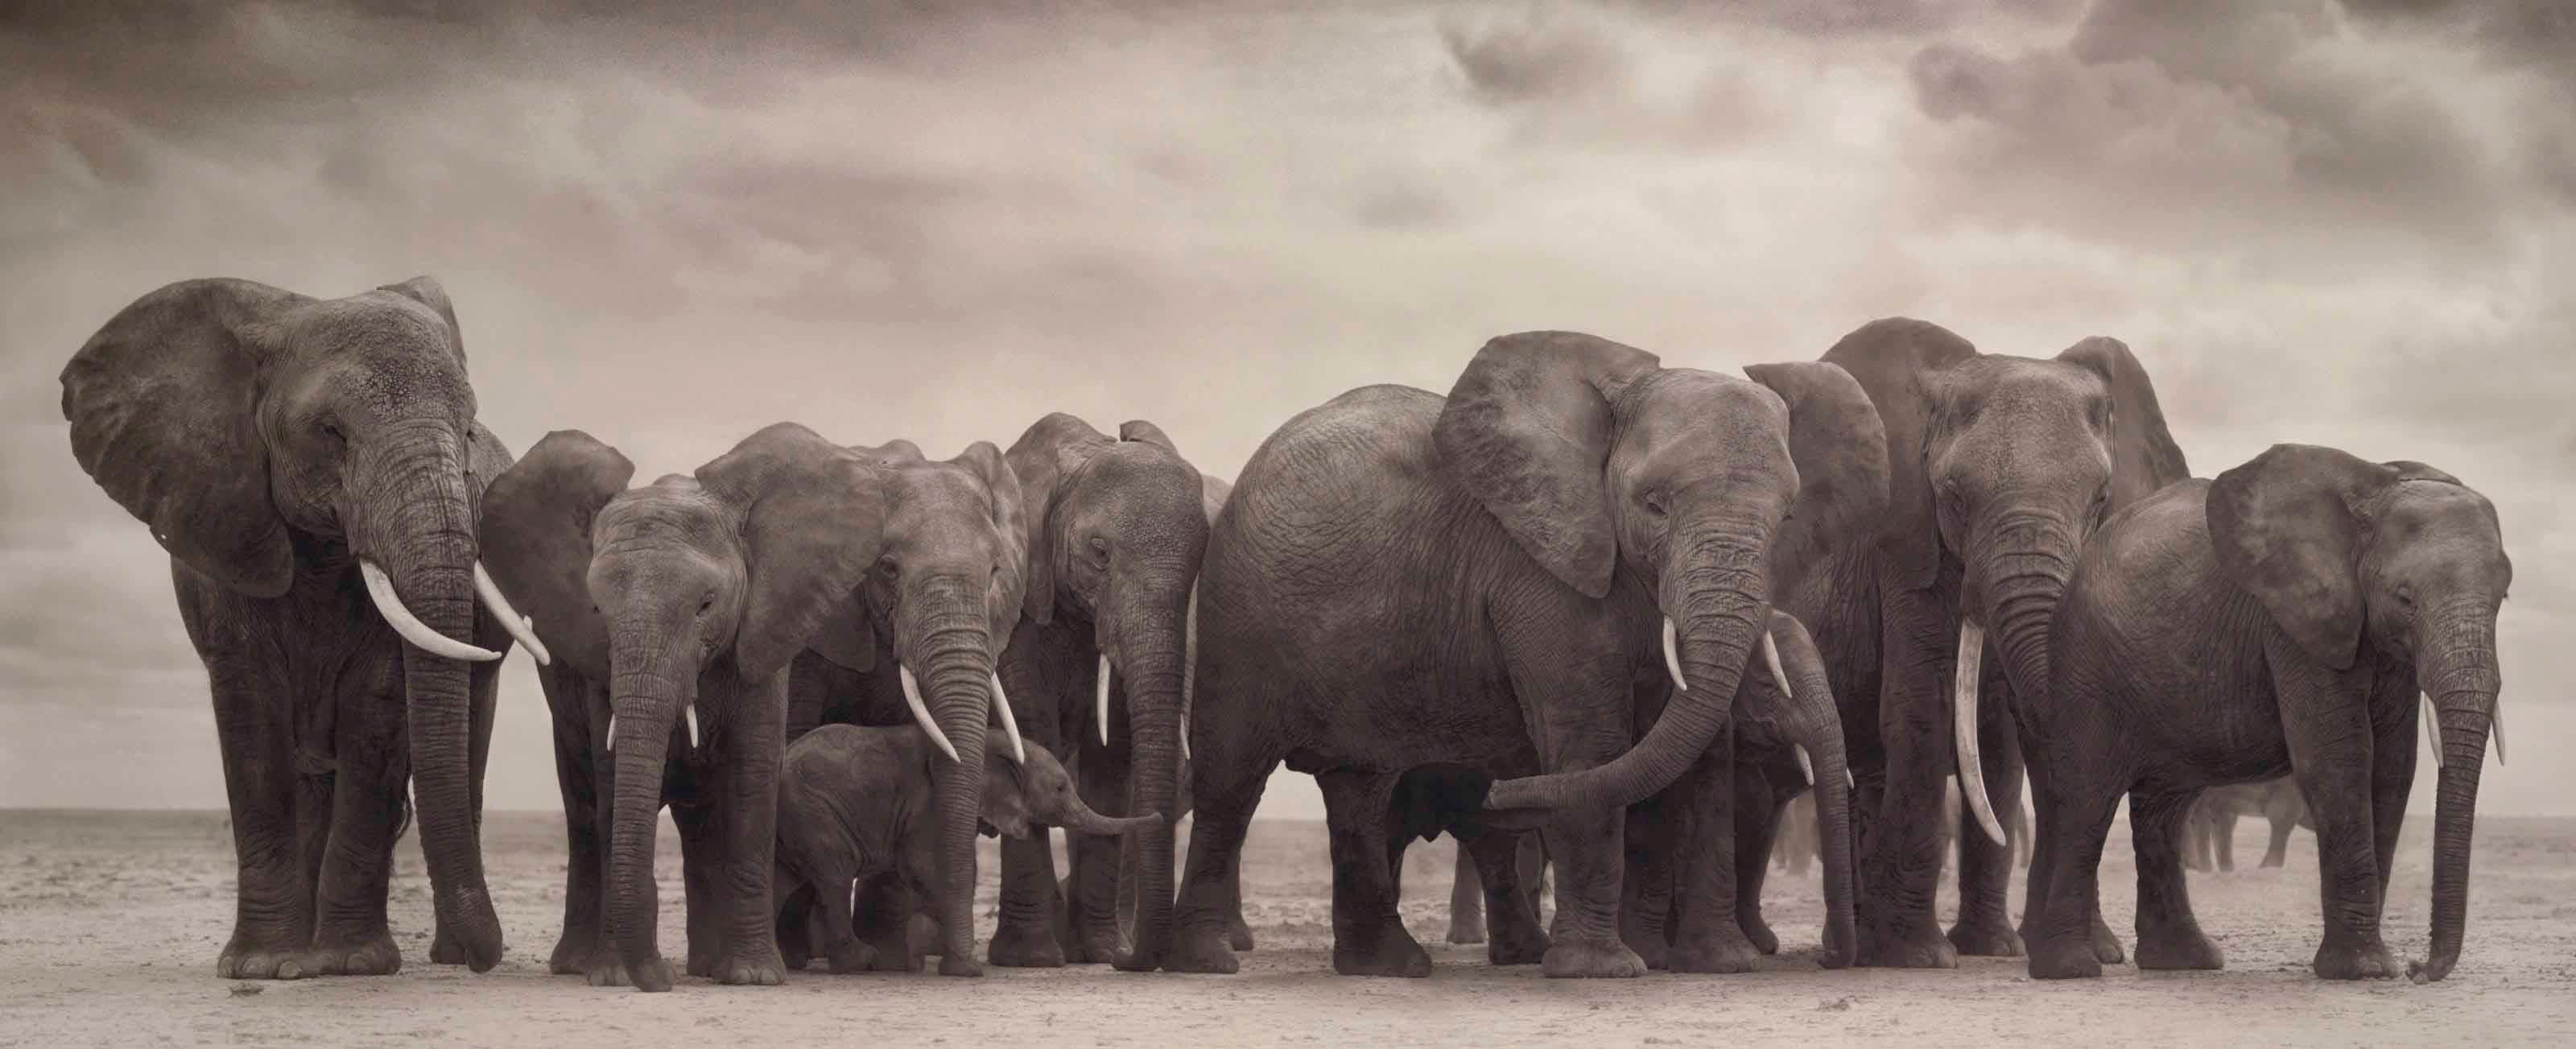 Elefantengruppe auf nackter Erde, Amboseli Nick Brandt, Afrika, Tier, Elefant